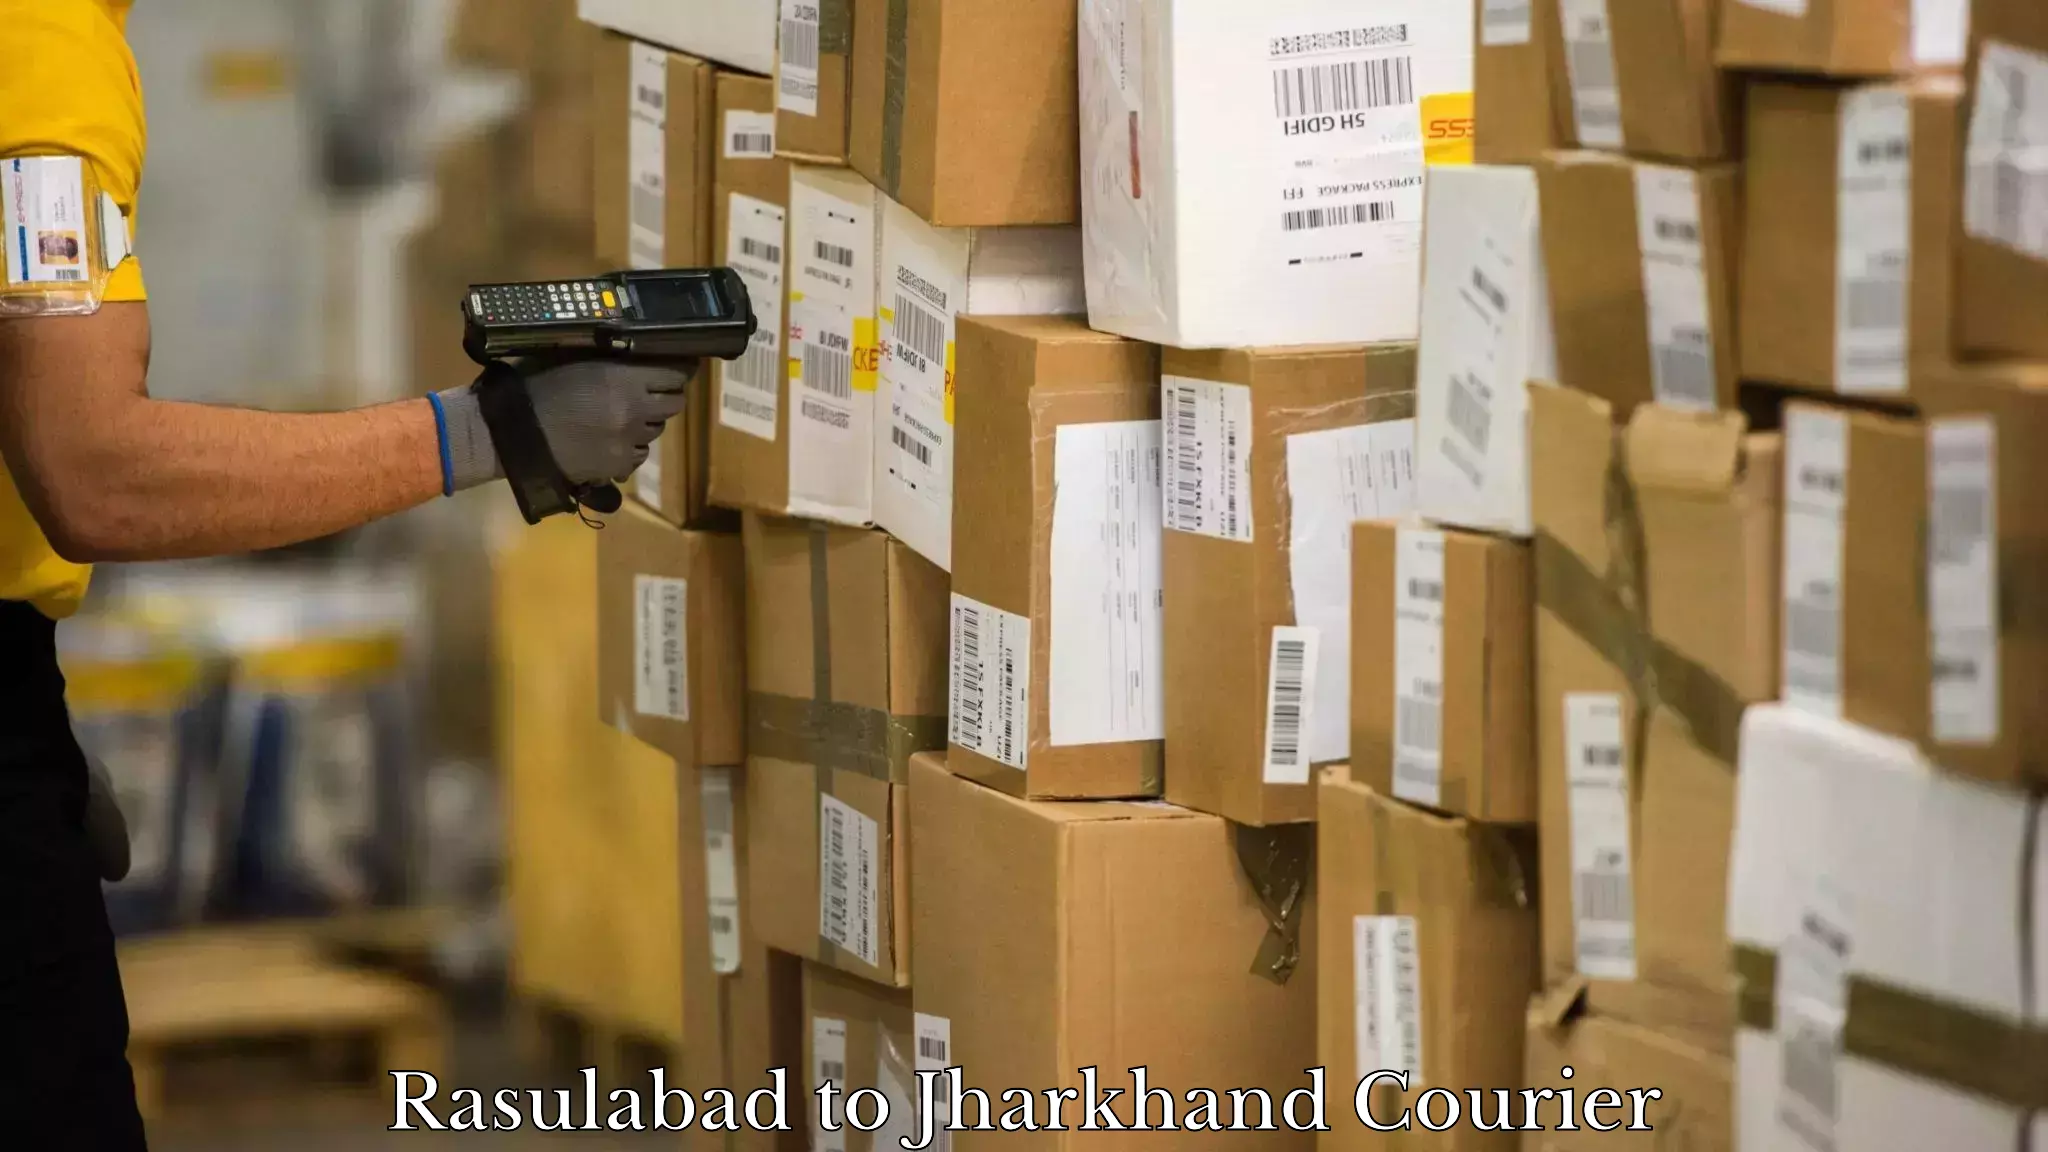 Logistics service provider Rasulabad to Jharkhand